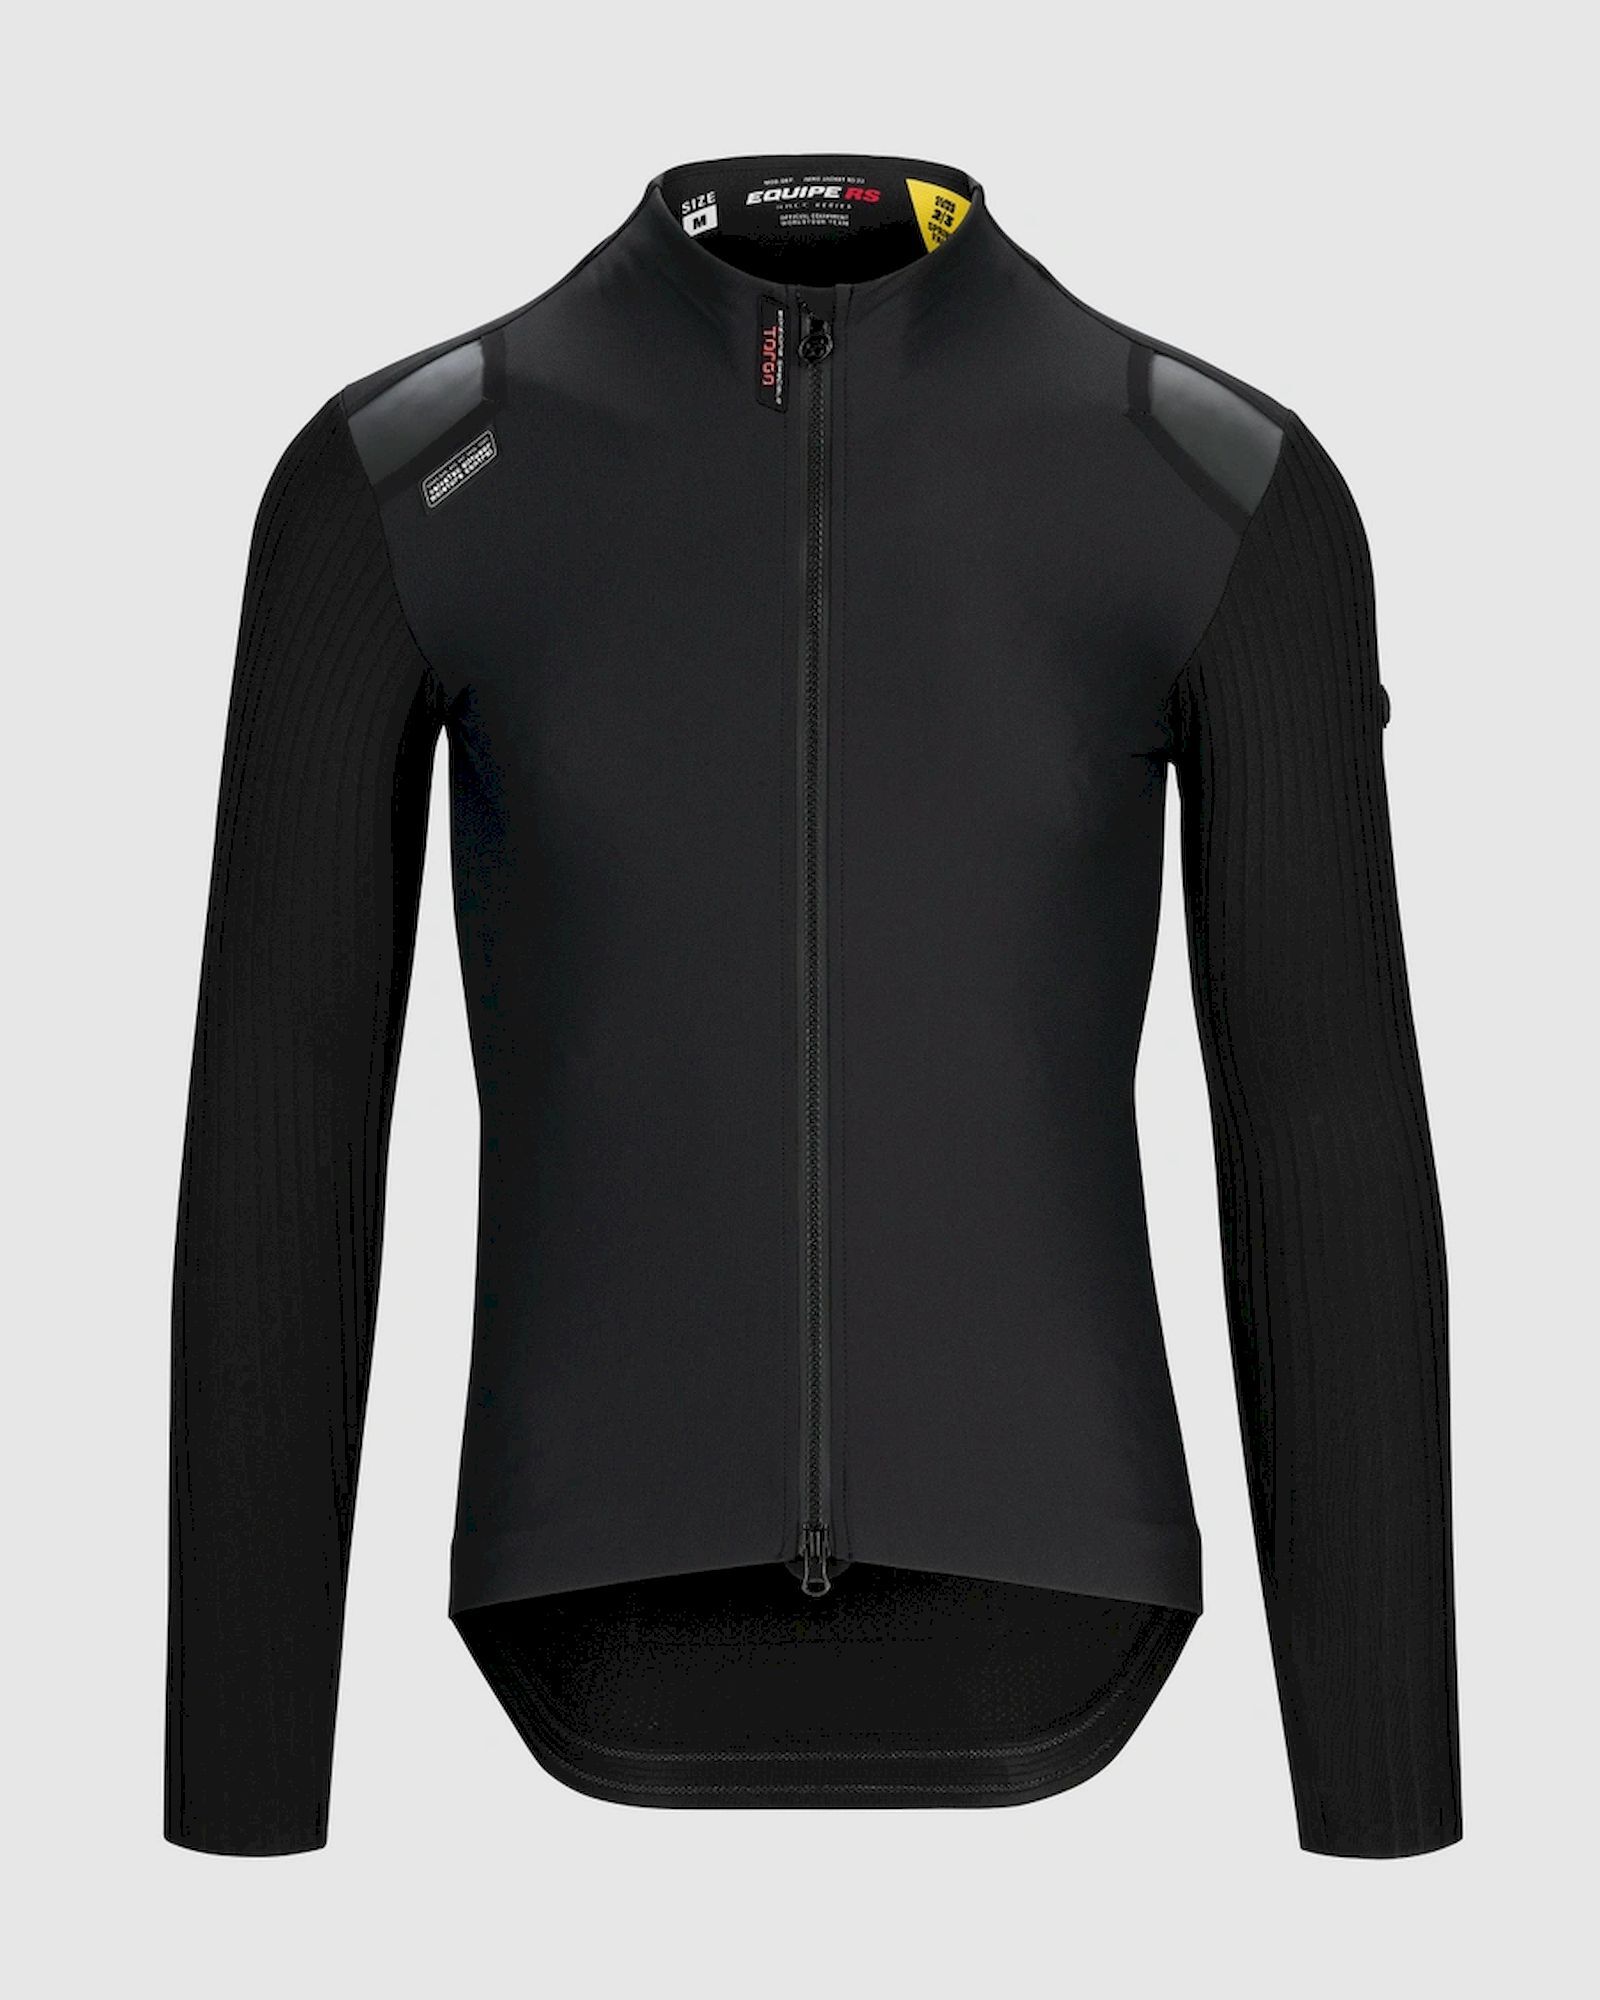 Assos Equipe RS 2/3 Jacket Targa - Chaqueta ciclismo - Hombre | Hardloop